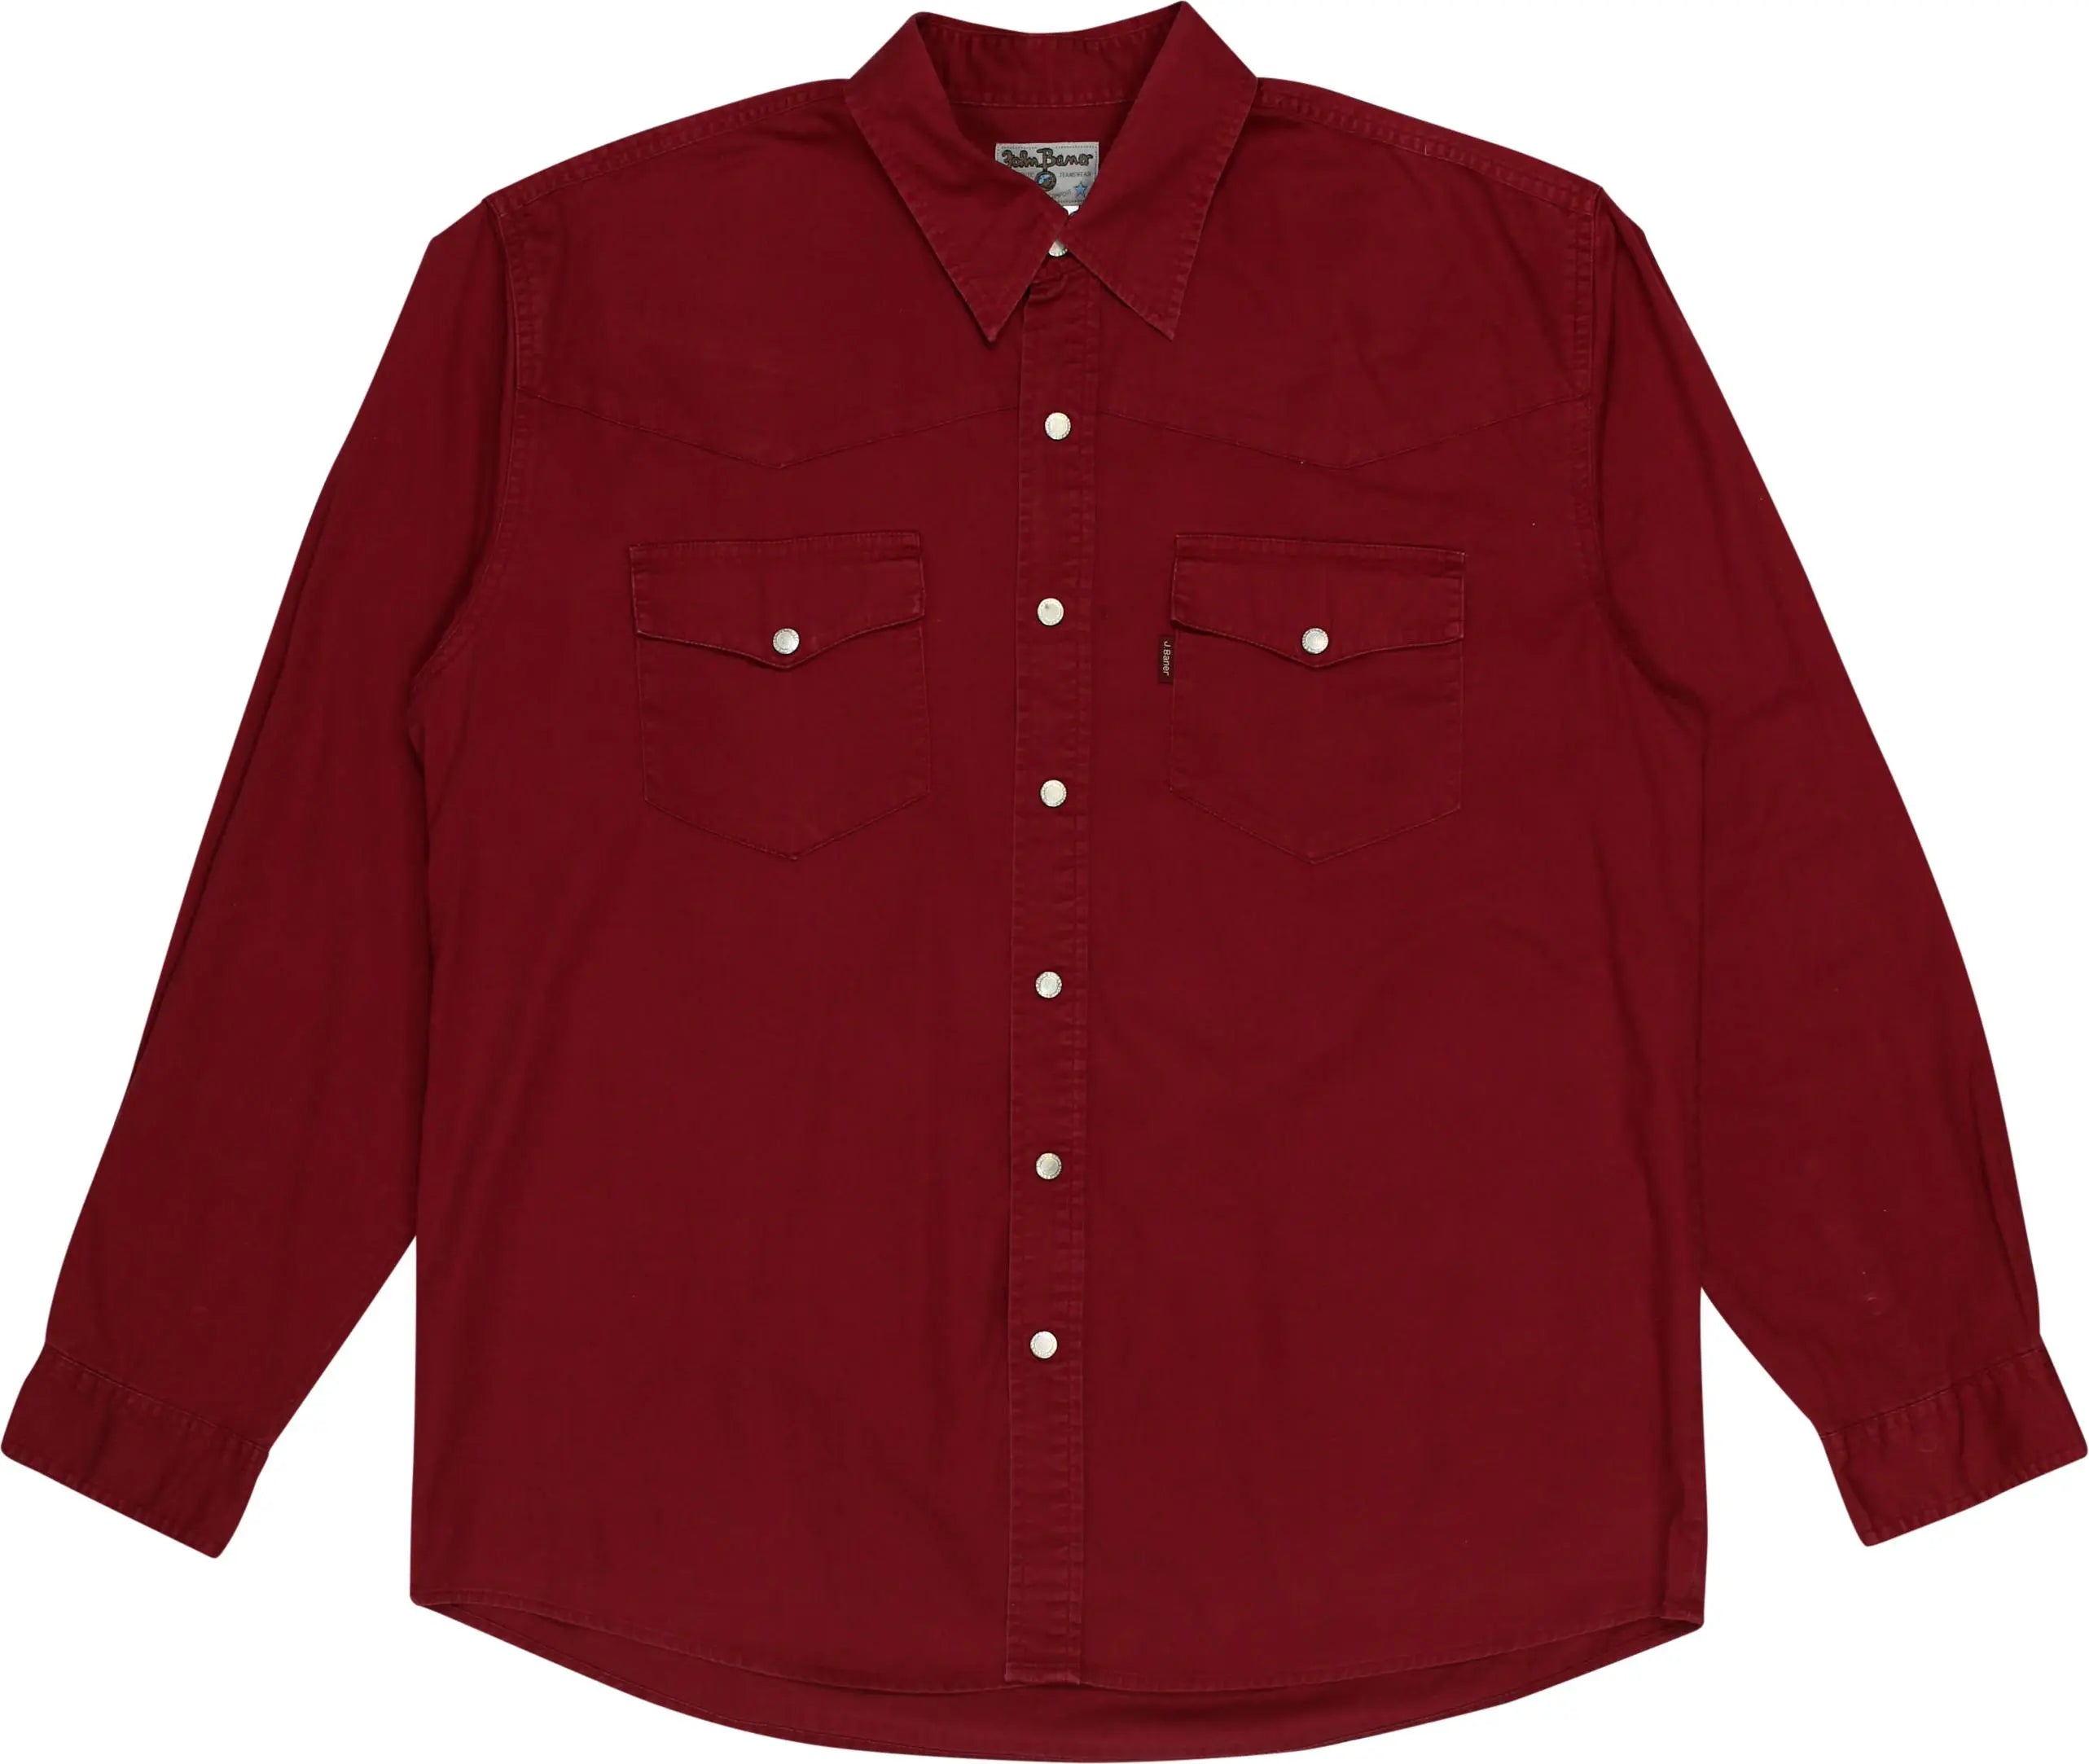 John Baner - Red Denim Shirt- ThriftTale.com - Vintage and second handclothing